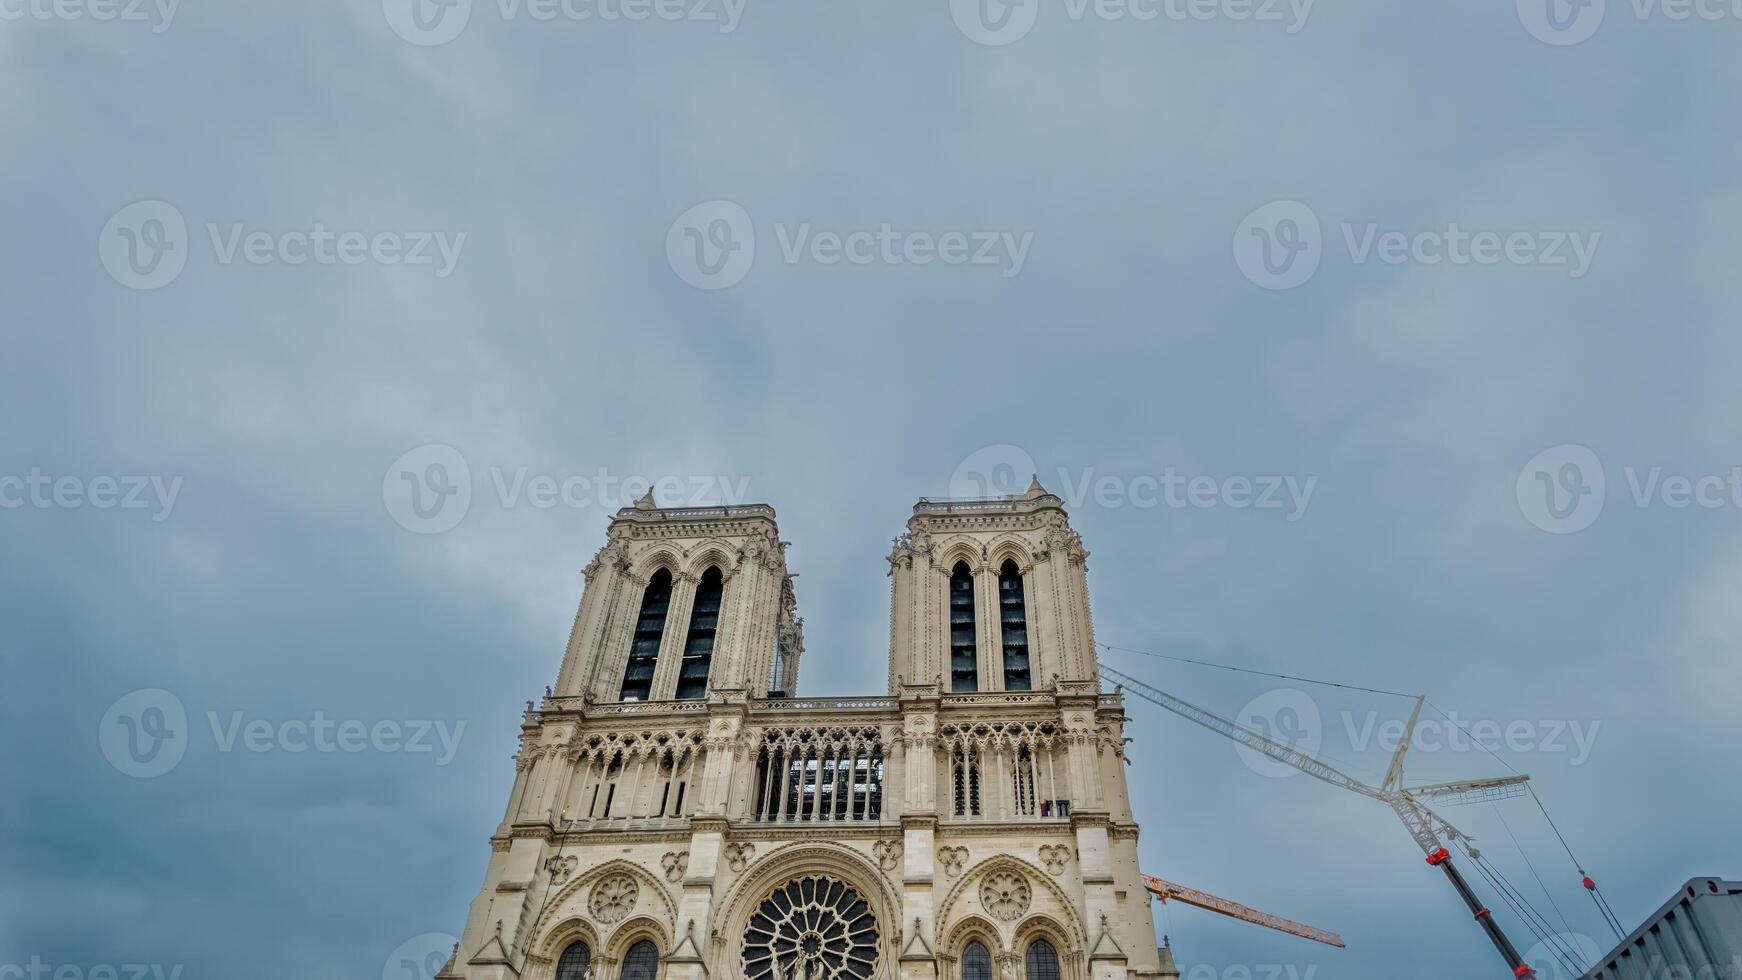 majestueux notre dame cathédrale dans Paris en dessous de restauration avec grues contre une nuageux ciel, symbolisant culturel patrimoine et européen architecture photo